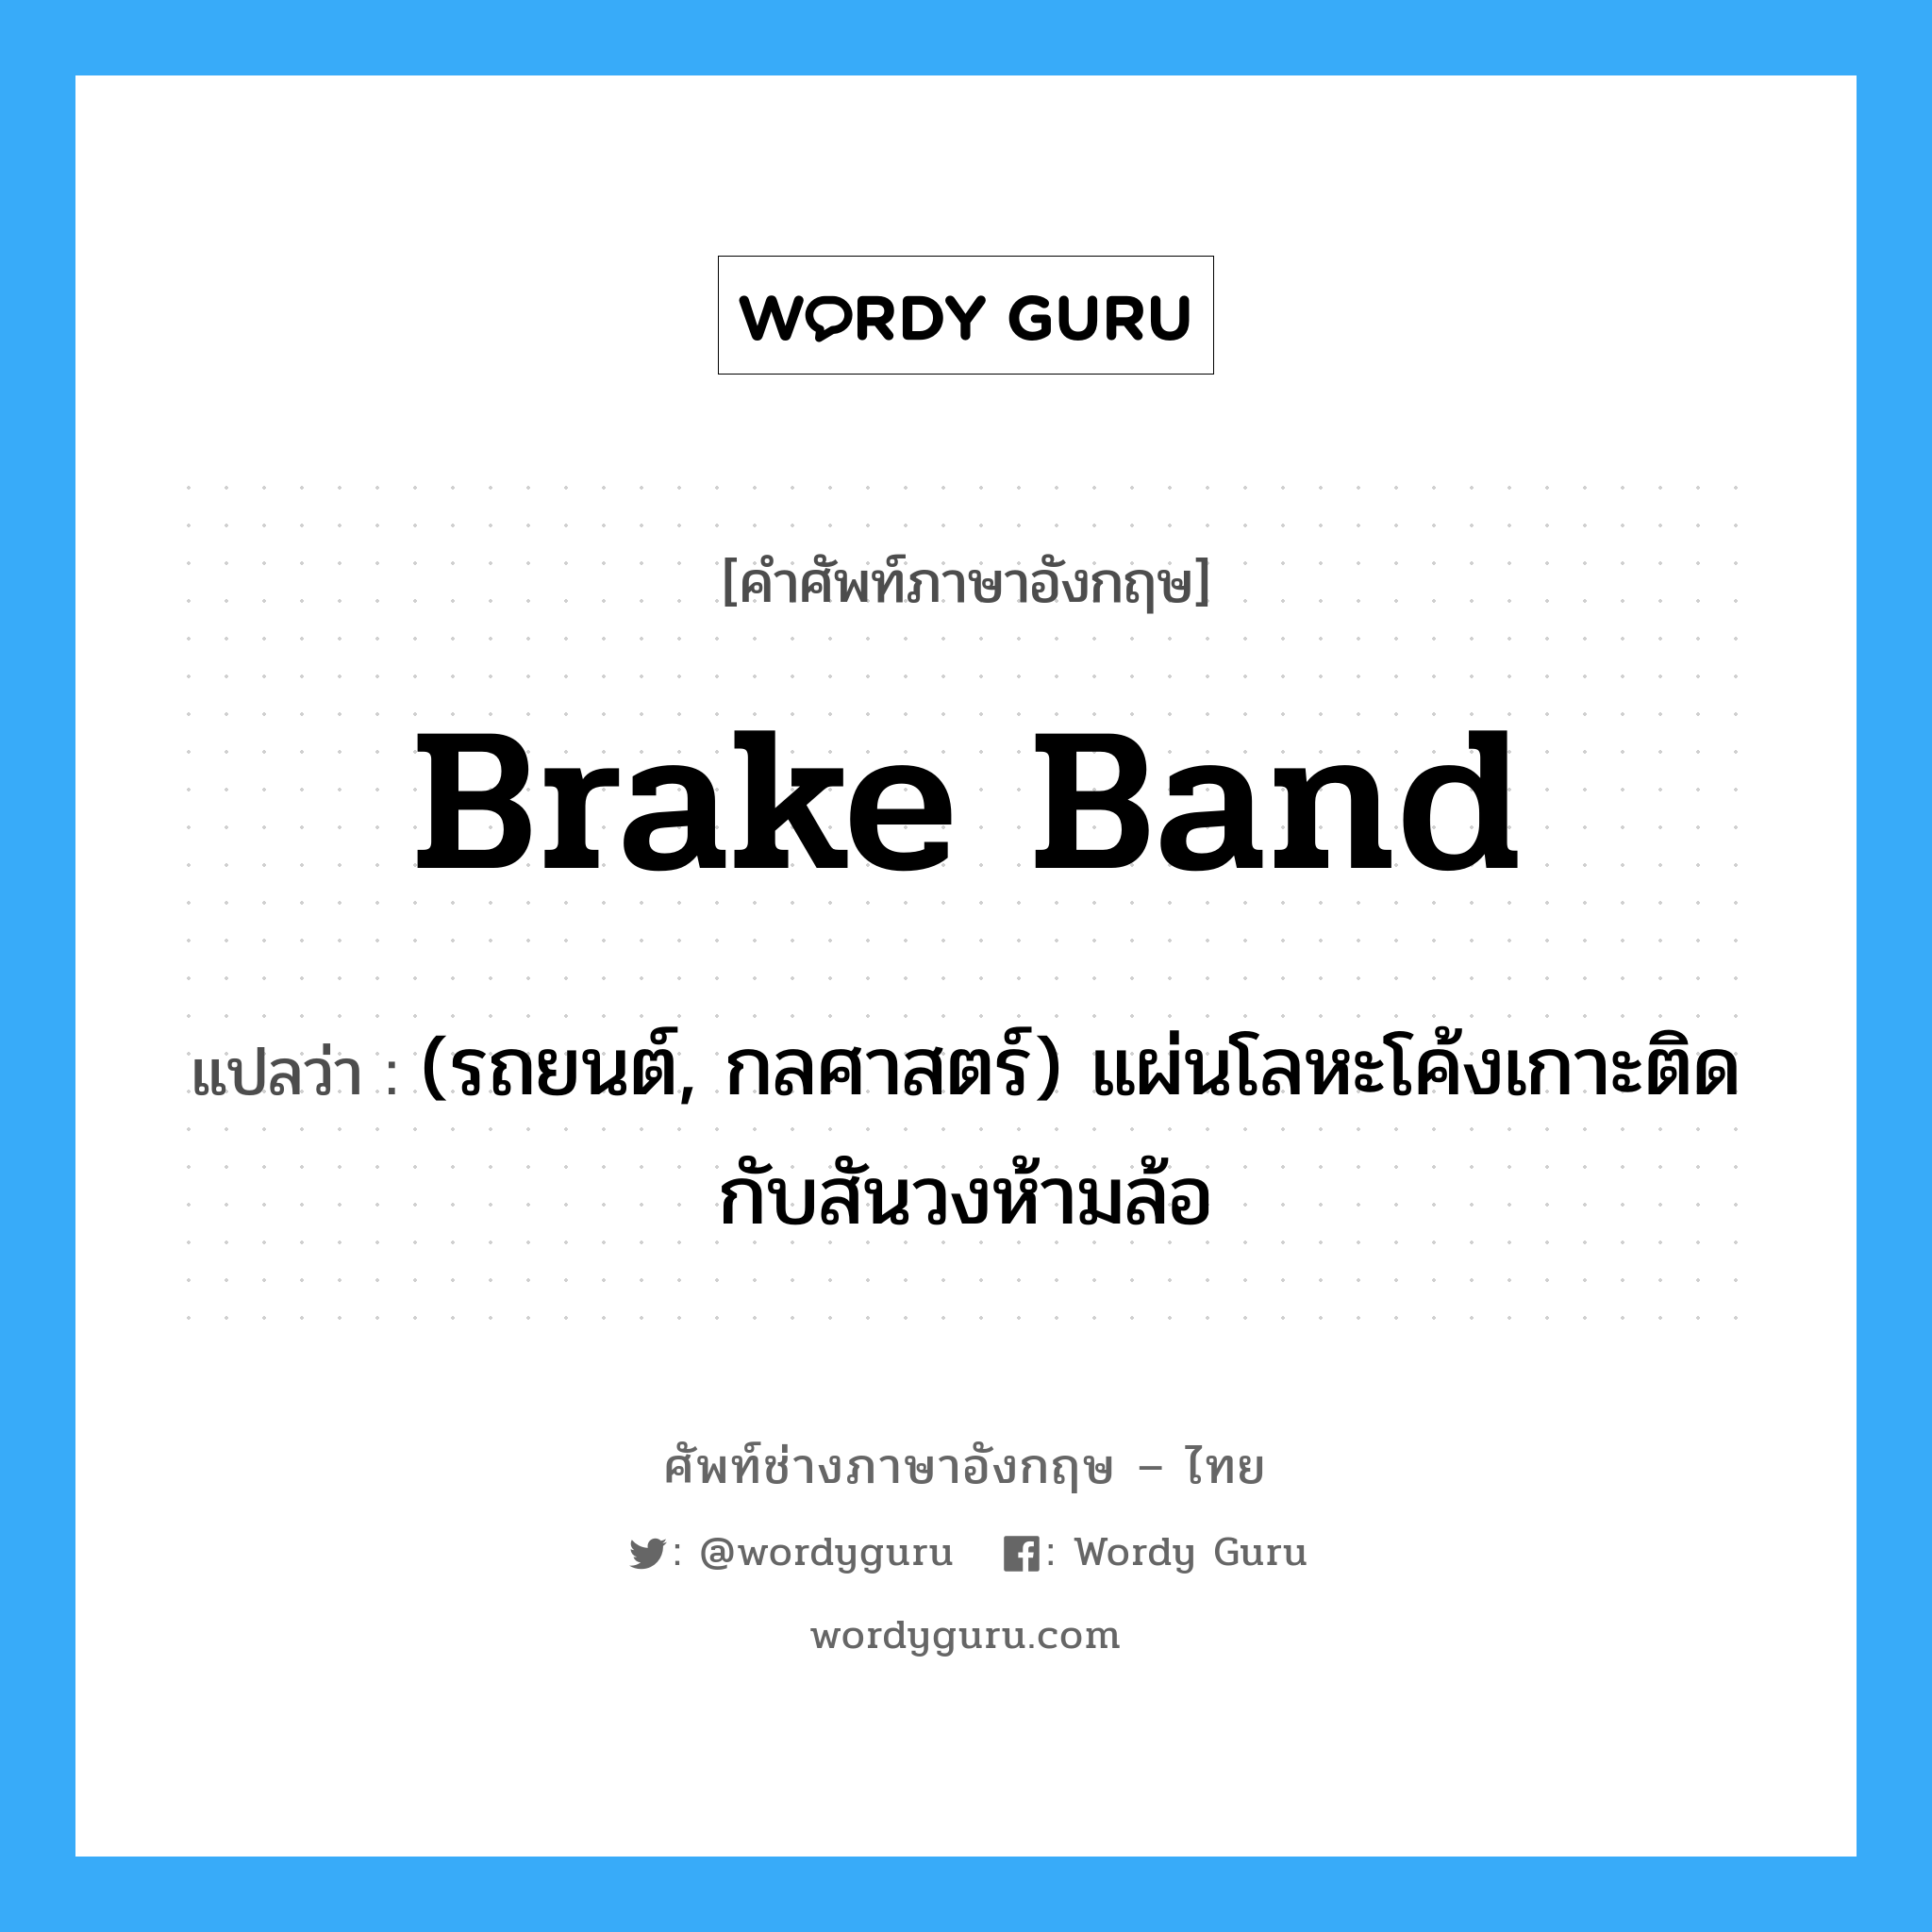 brake band แปลว่า?, คำศัพท์ช่างภาษาอังกฤษ - ไทย brake band คำศัพท์ภาษาอังกฤษ brake band แปลว่า (รถยนต์, กลศาสตร์) แผ่นโลหะโค้งเกาะติดกับสันวงห้ามล้อ